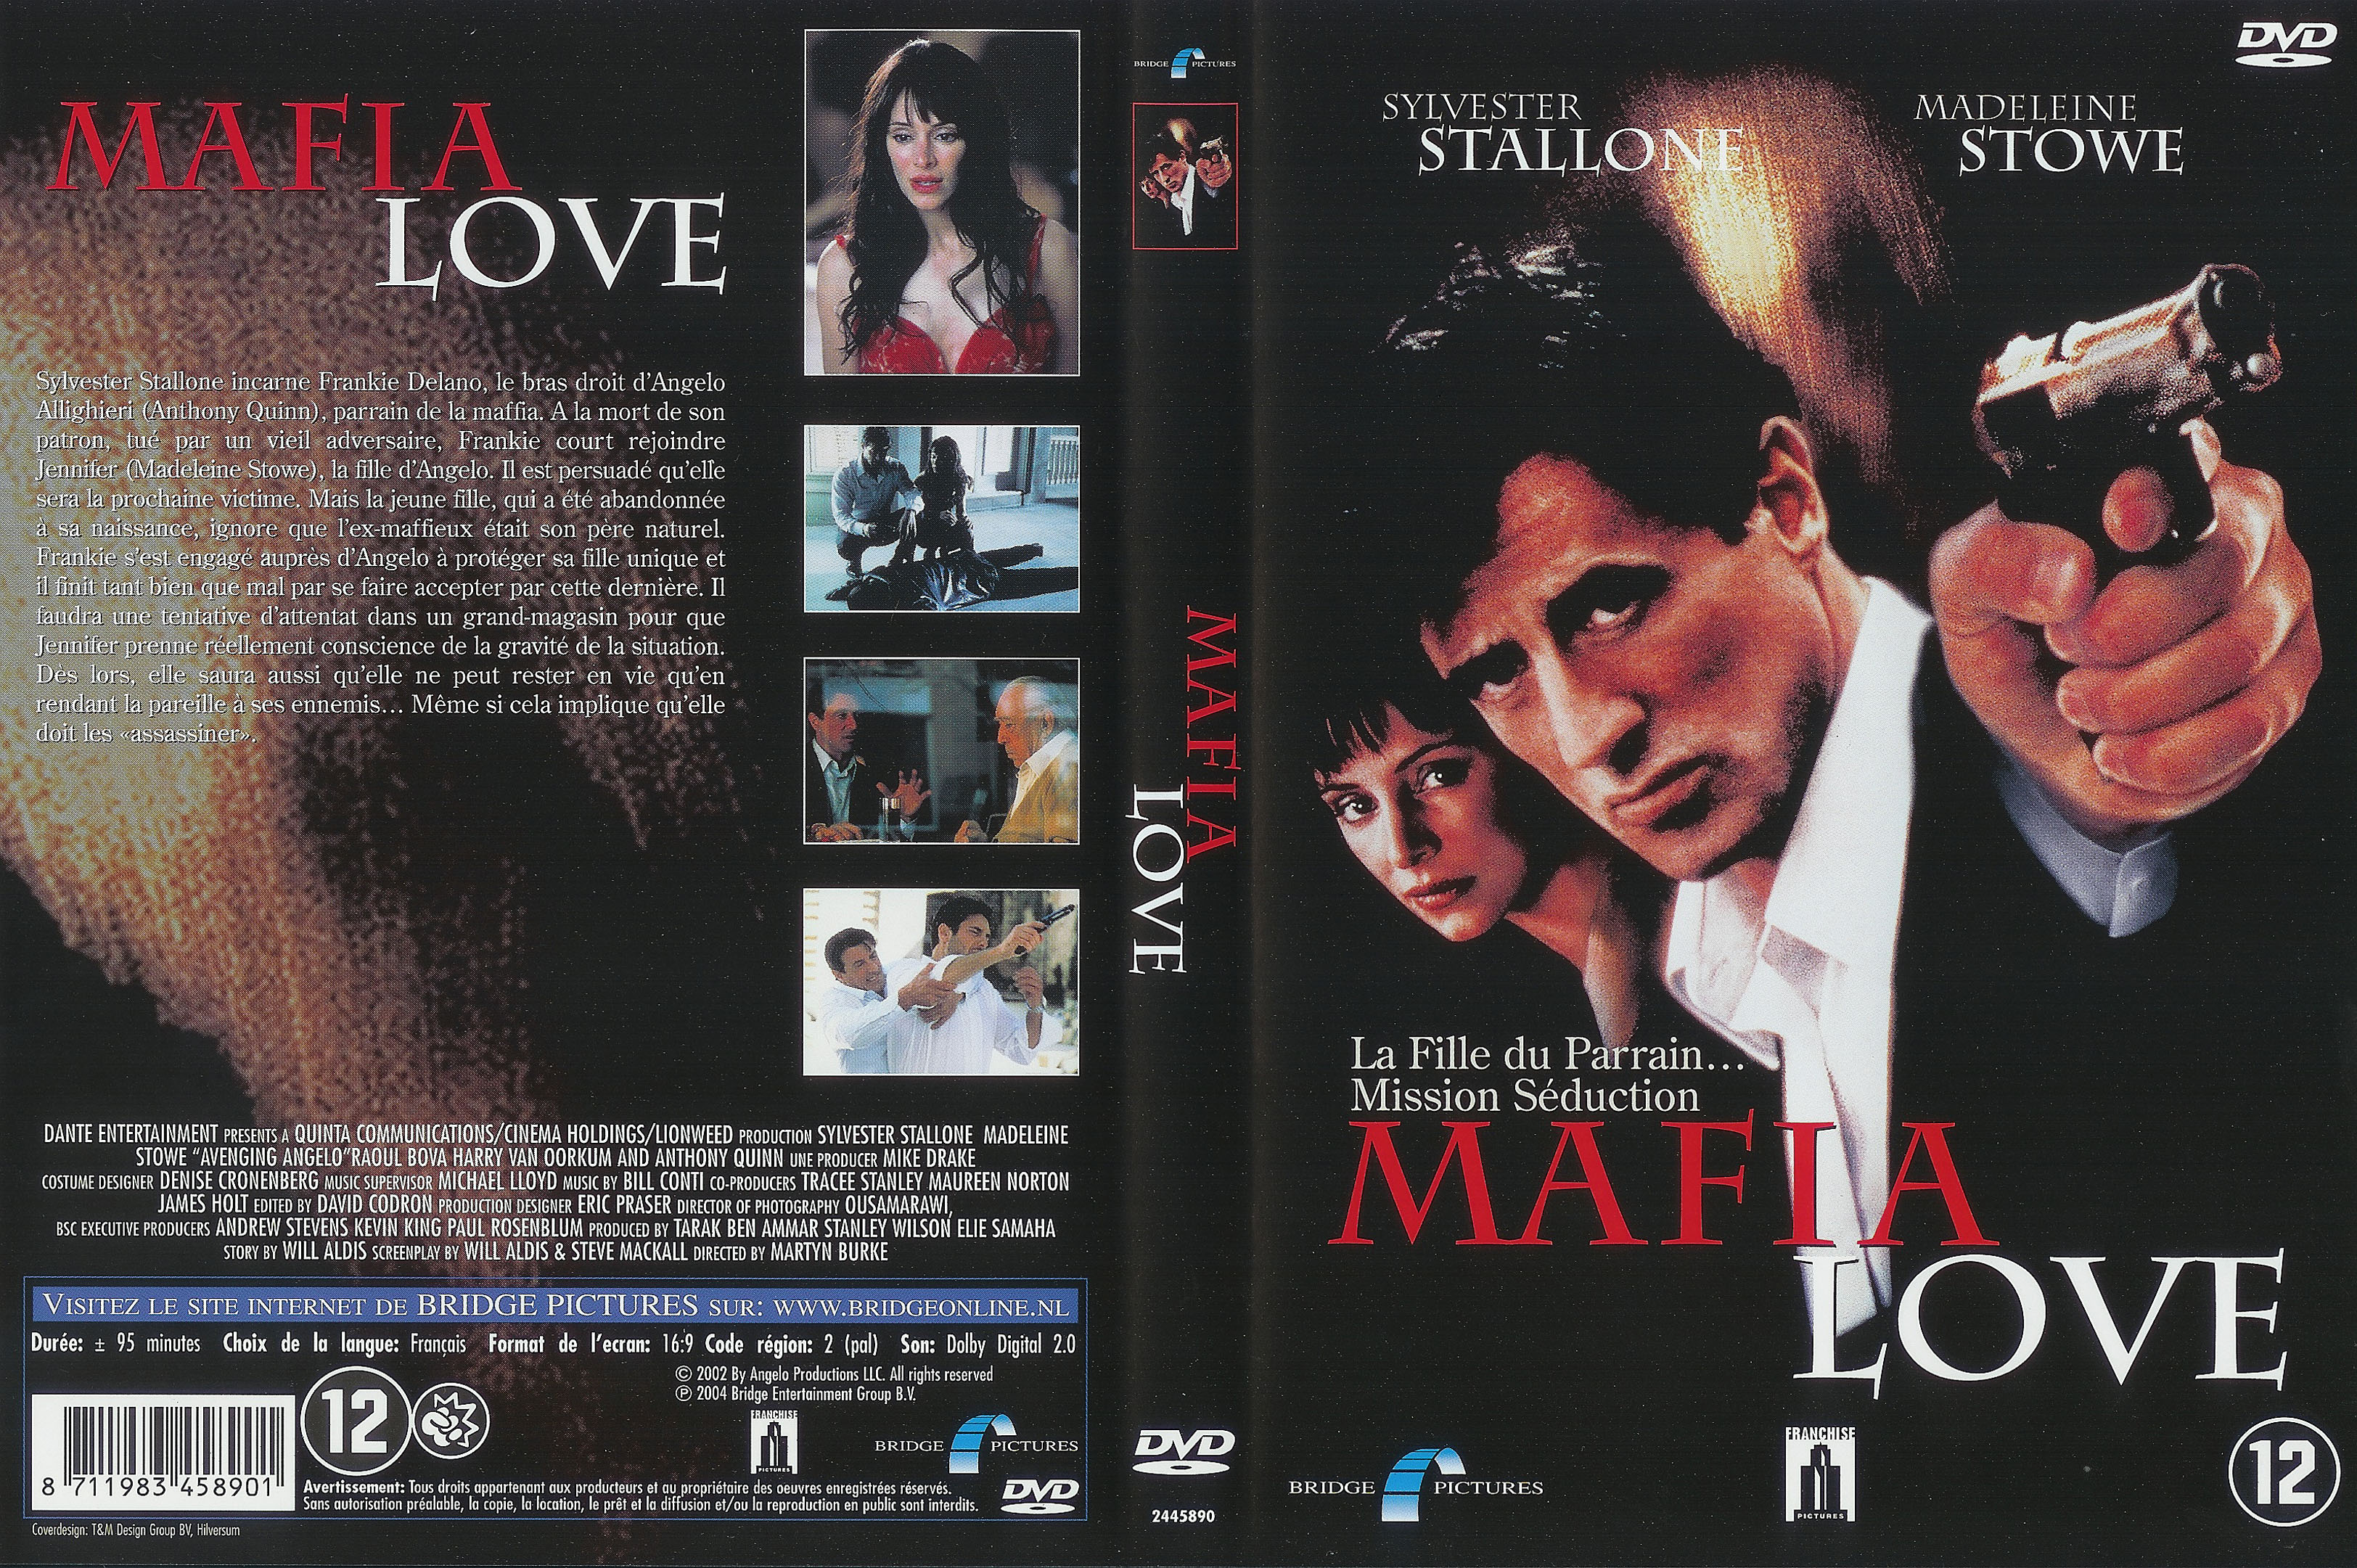 Jaquette DVD Mafia love v2